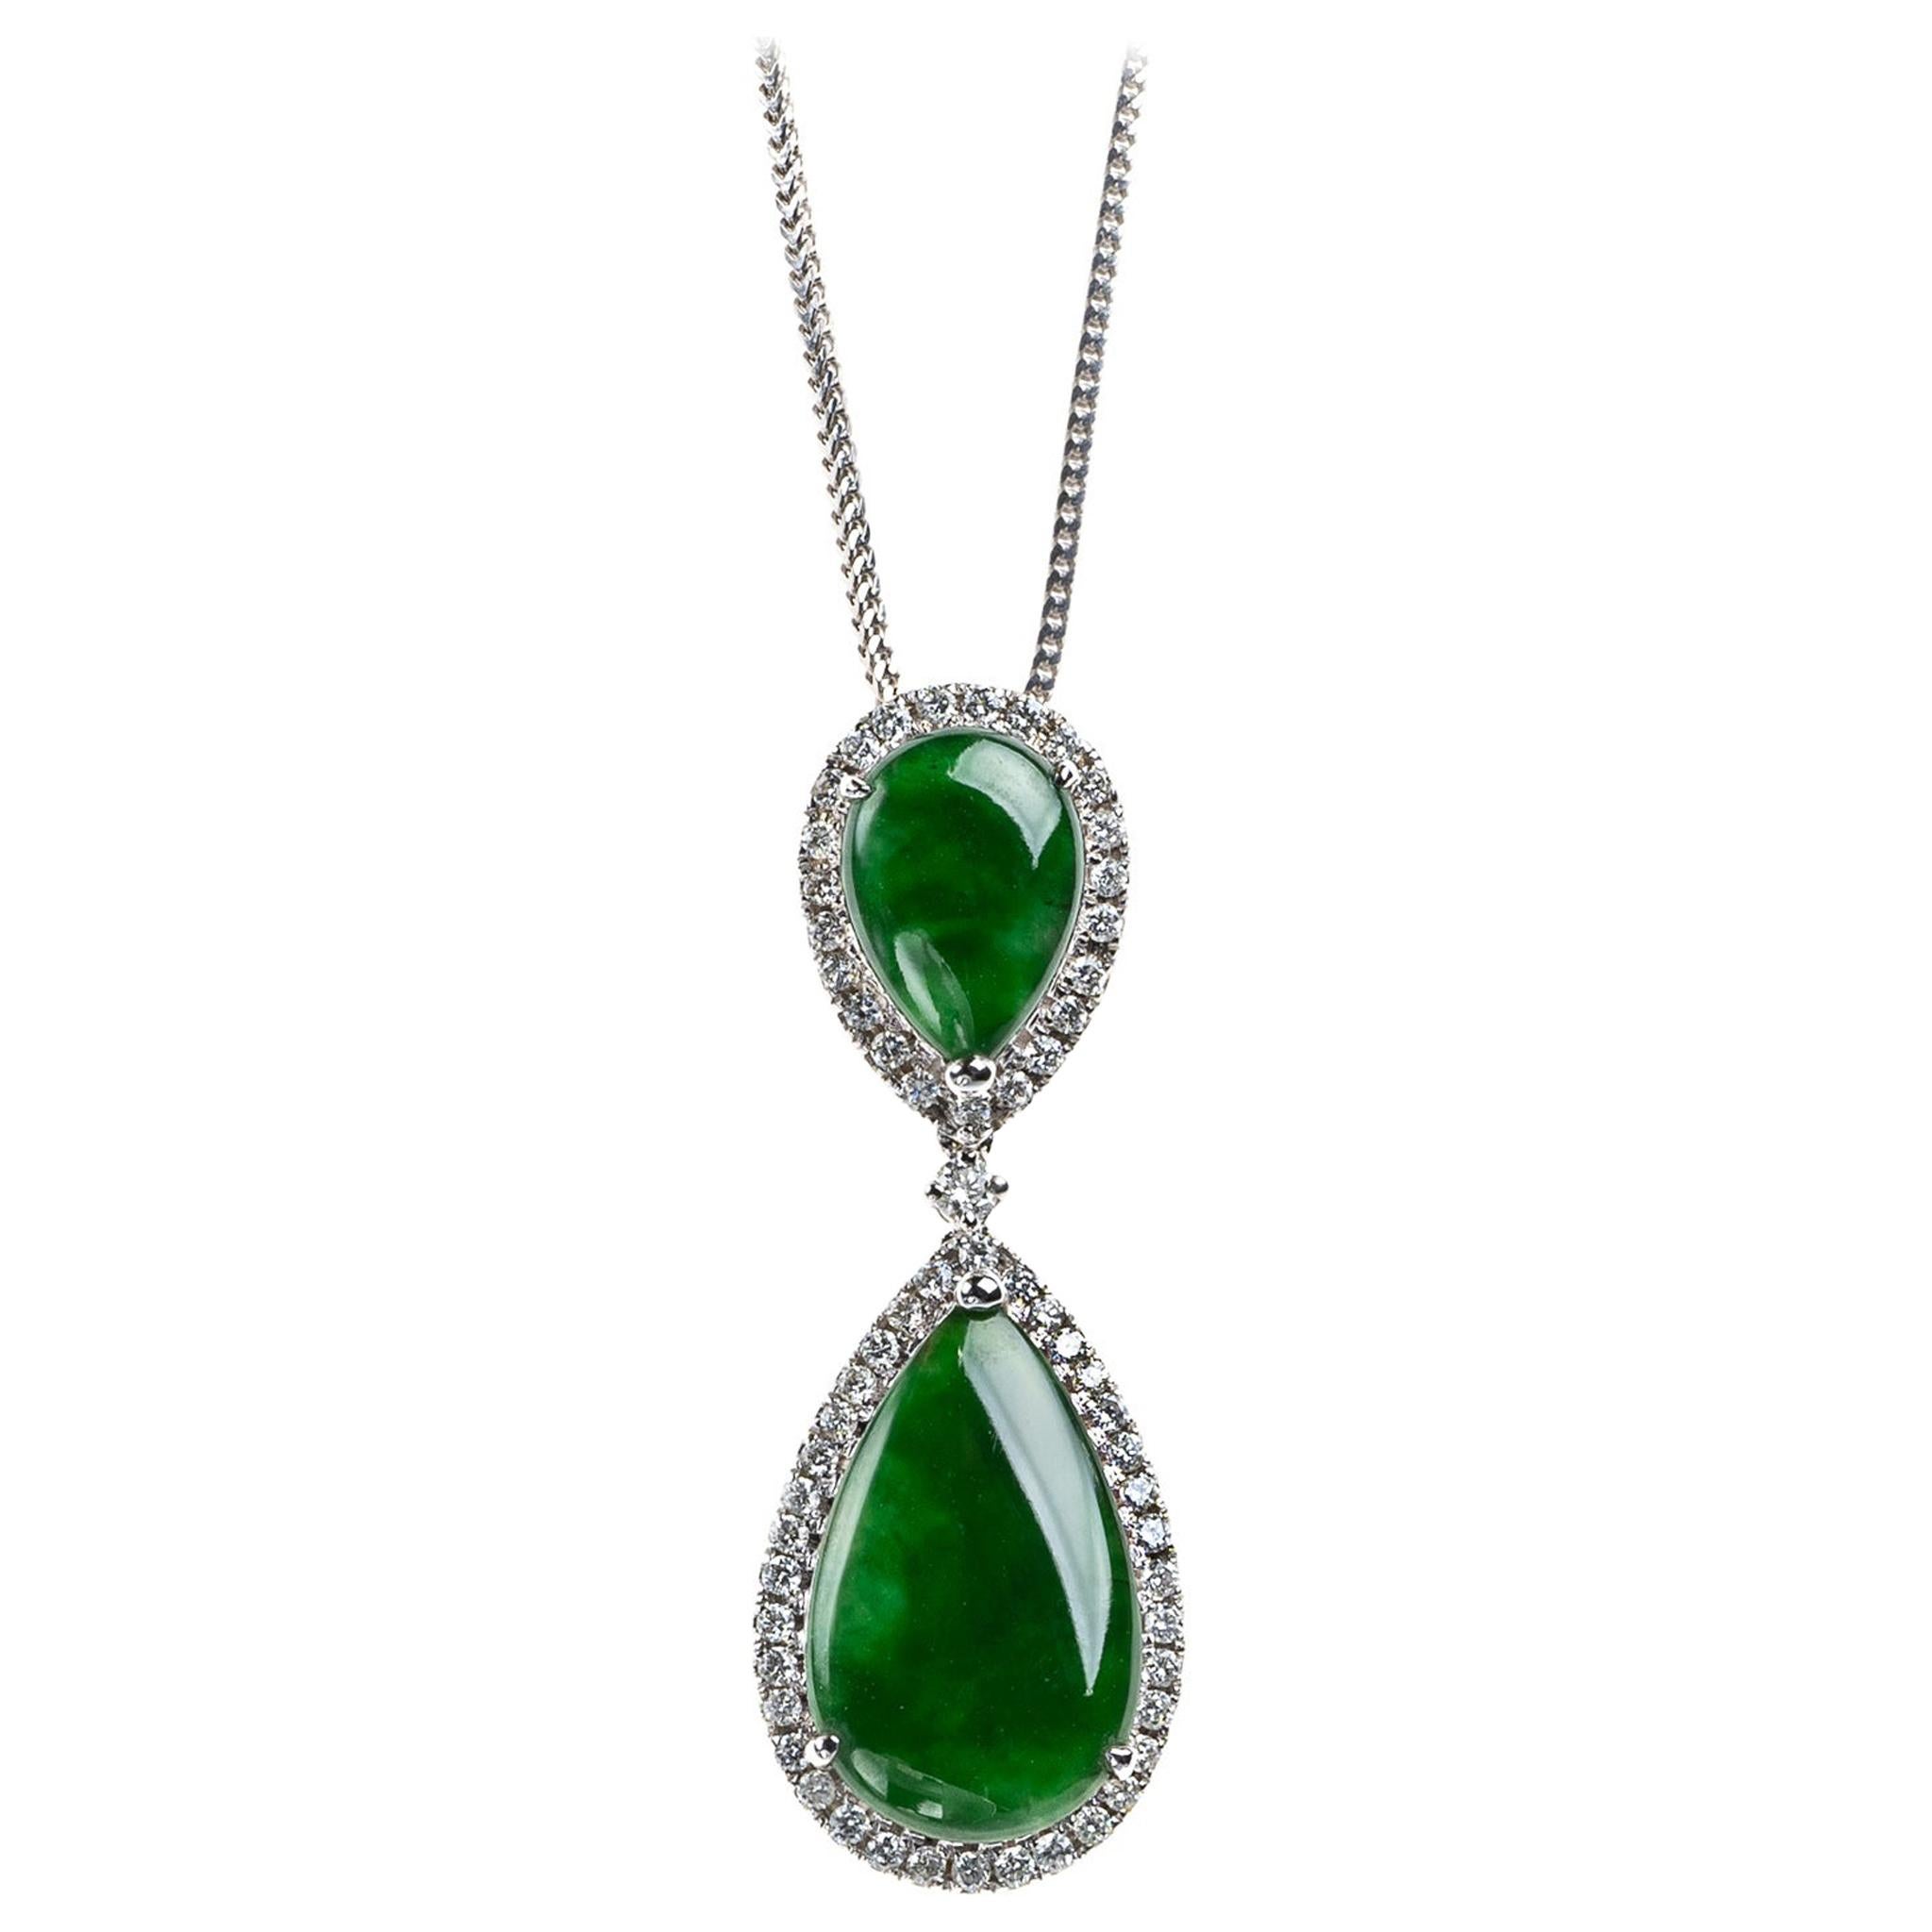 Pendentif en jadéite verte impériale en forme de poire et diamants, certifié non traité